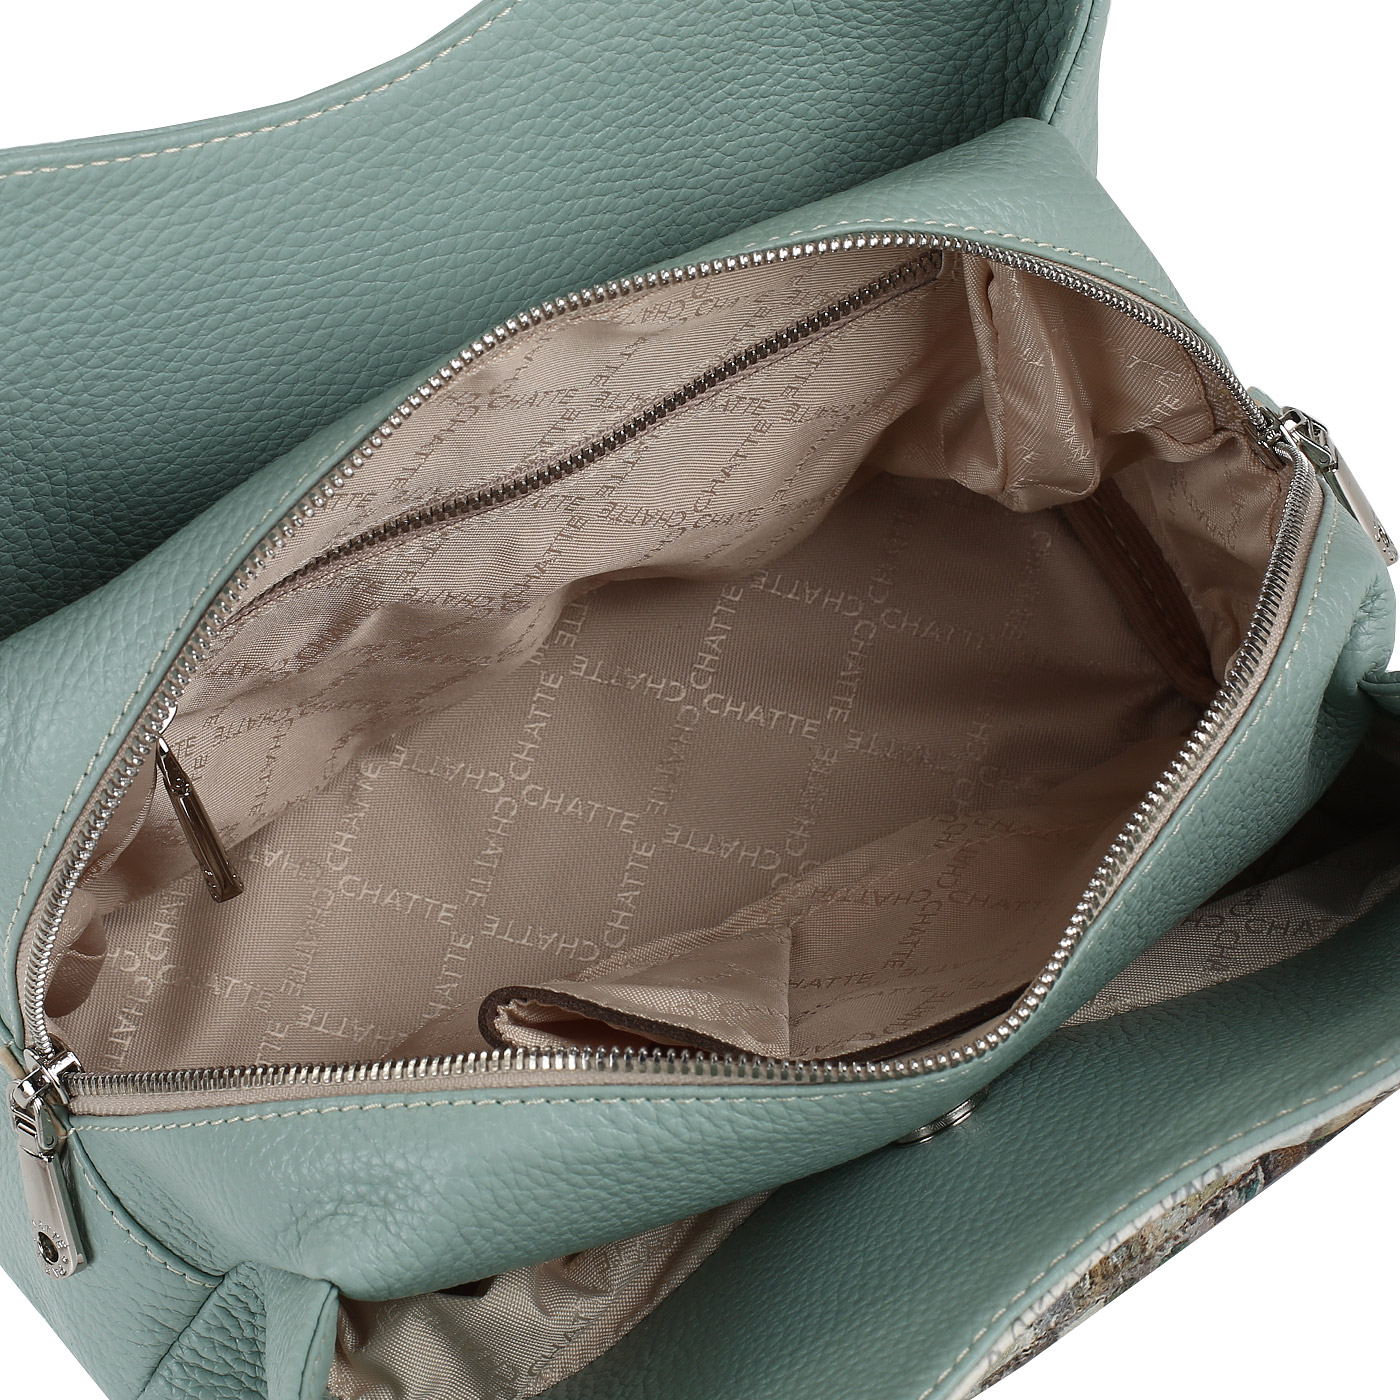 Женская кожаная сумка с тремя отделами Chatte 